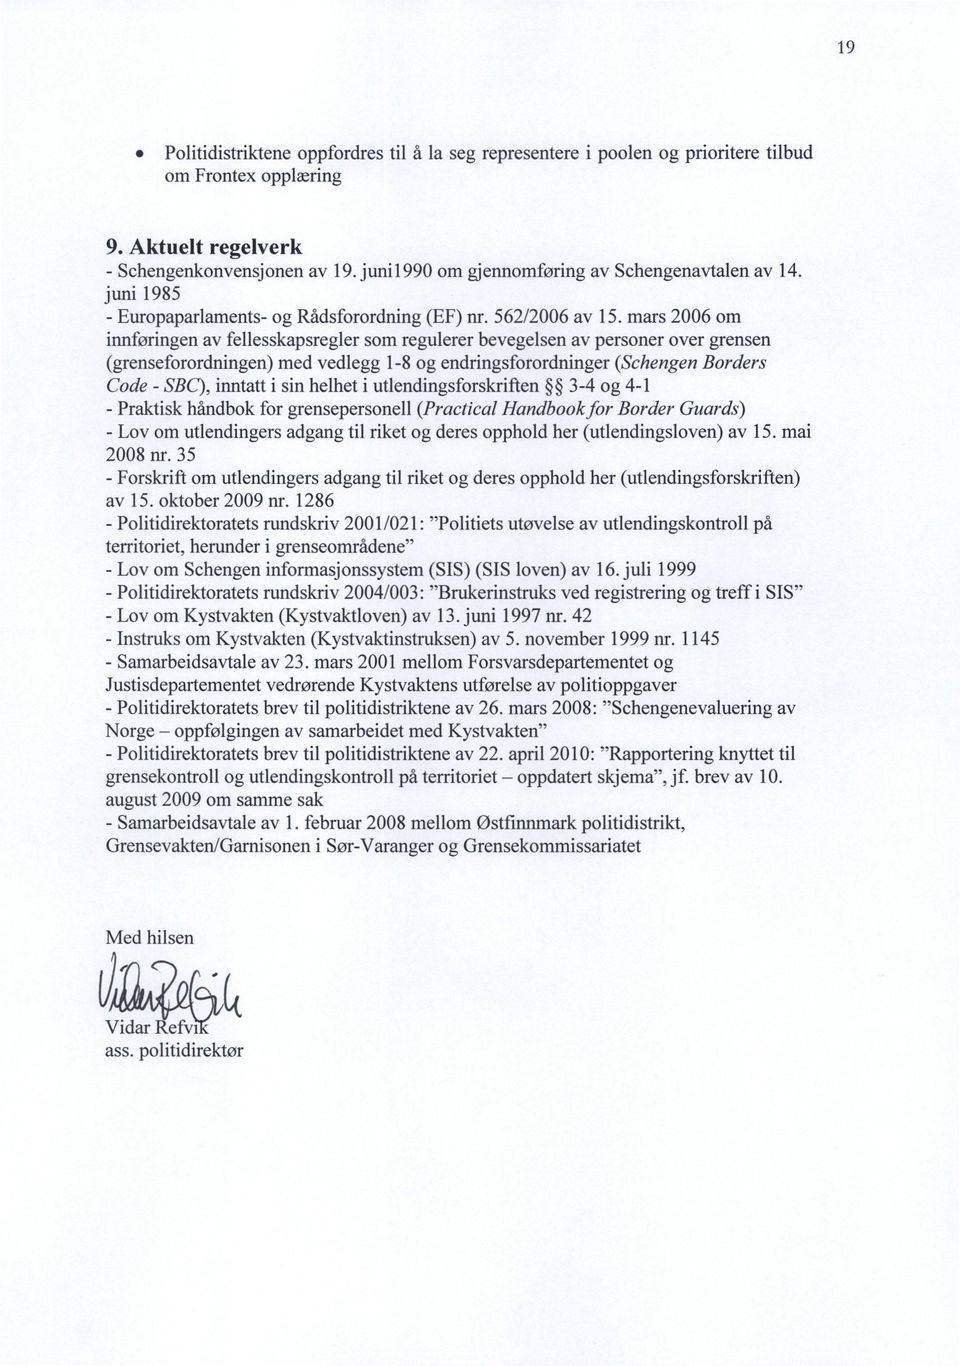 mars 2006 om innføringen av fellesskapsregler som regulerer bevegelsen av personer over grensen (grenseforordningen) med vedlegg 1-8 og endringsforordninger (Schengen Borders Code - SBC), inntatt i